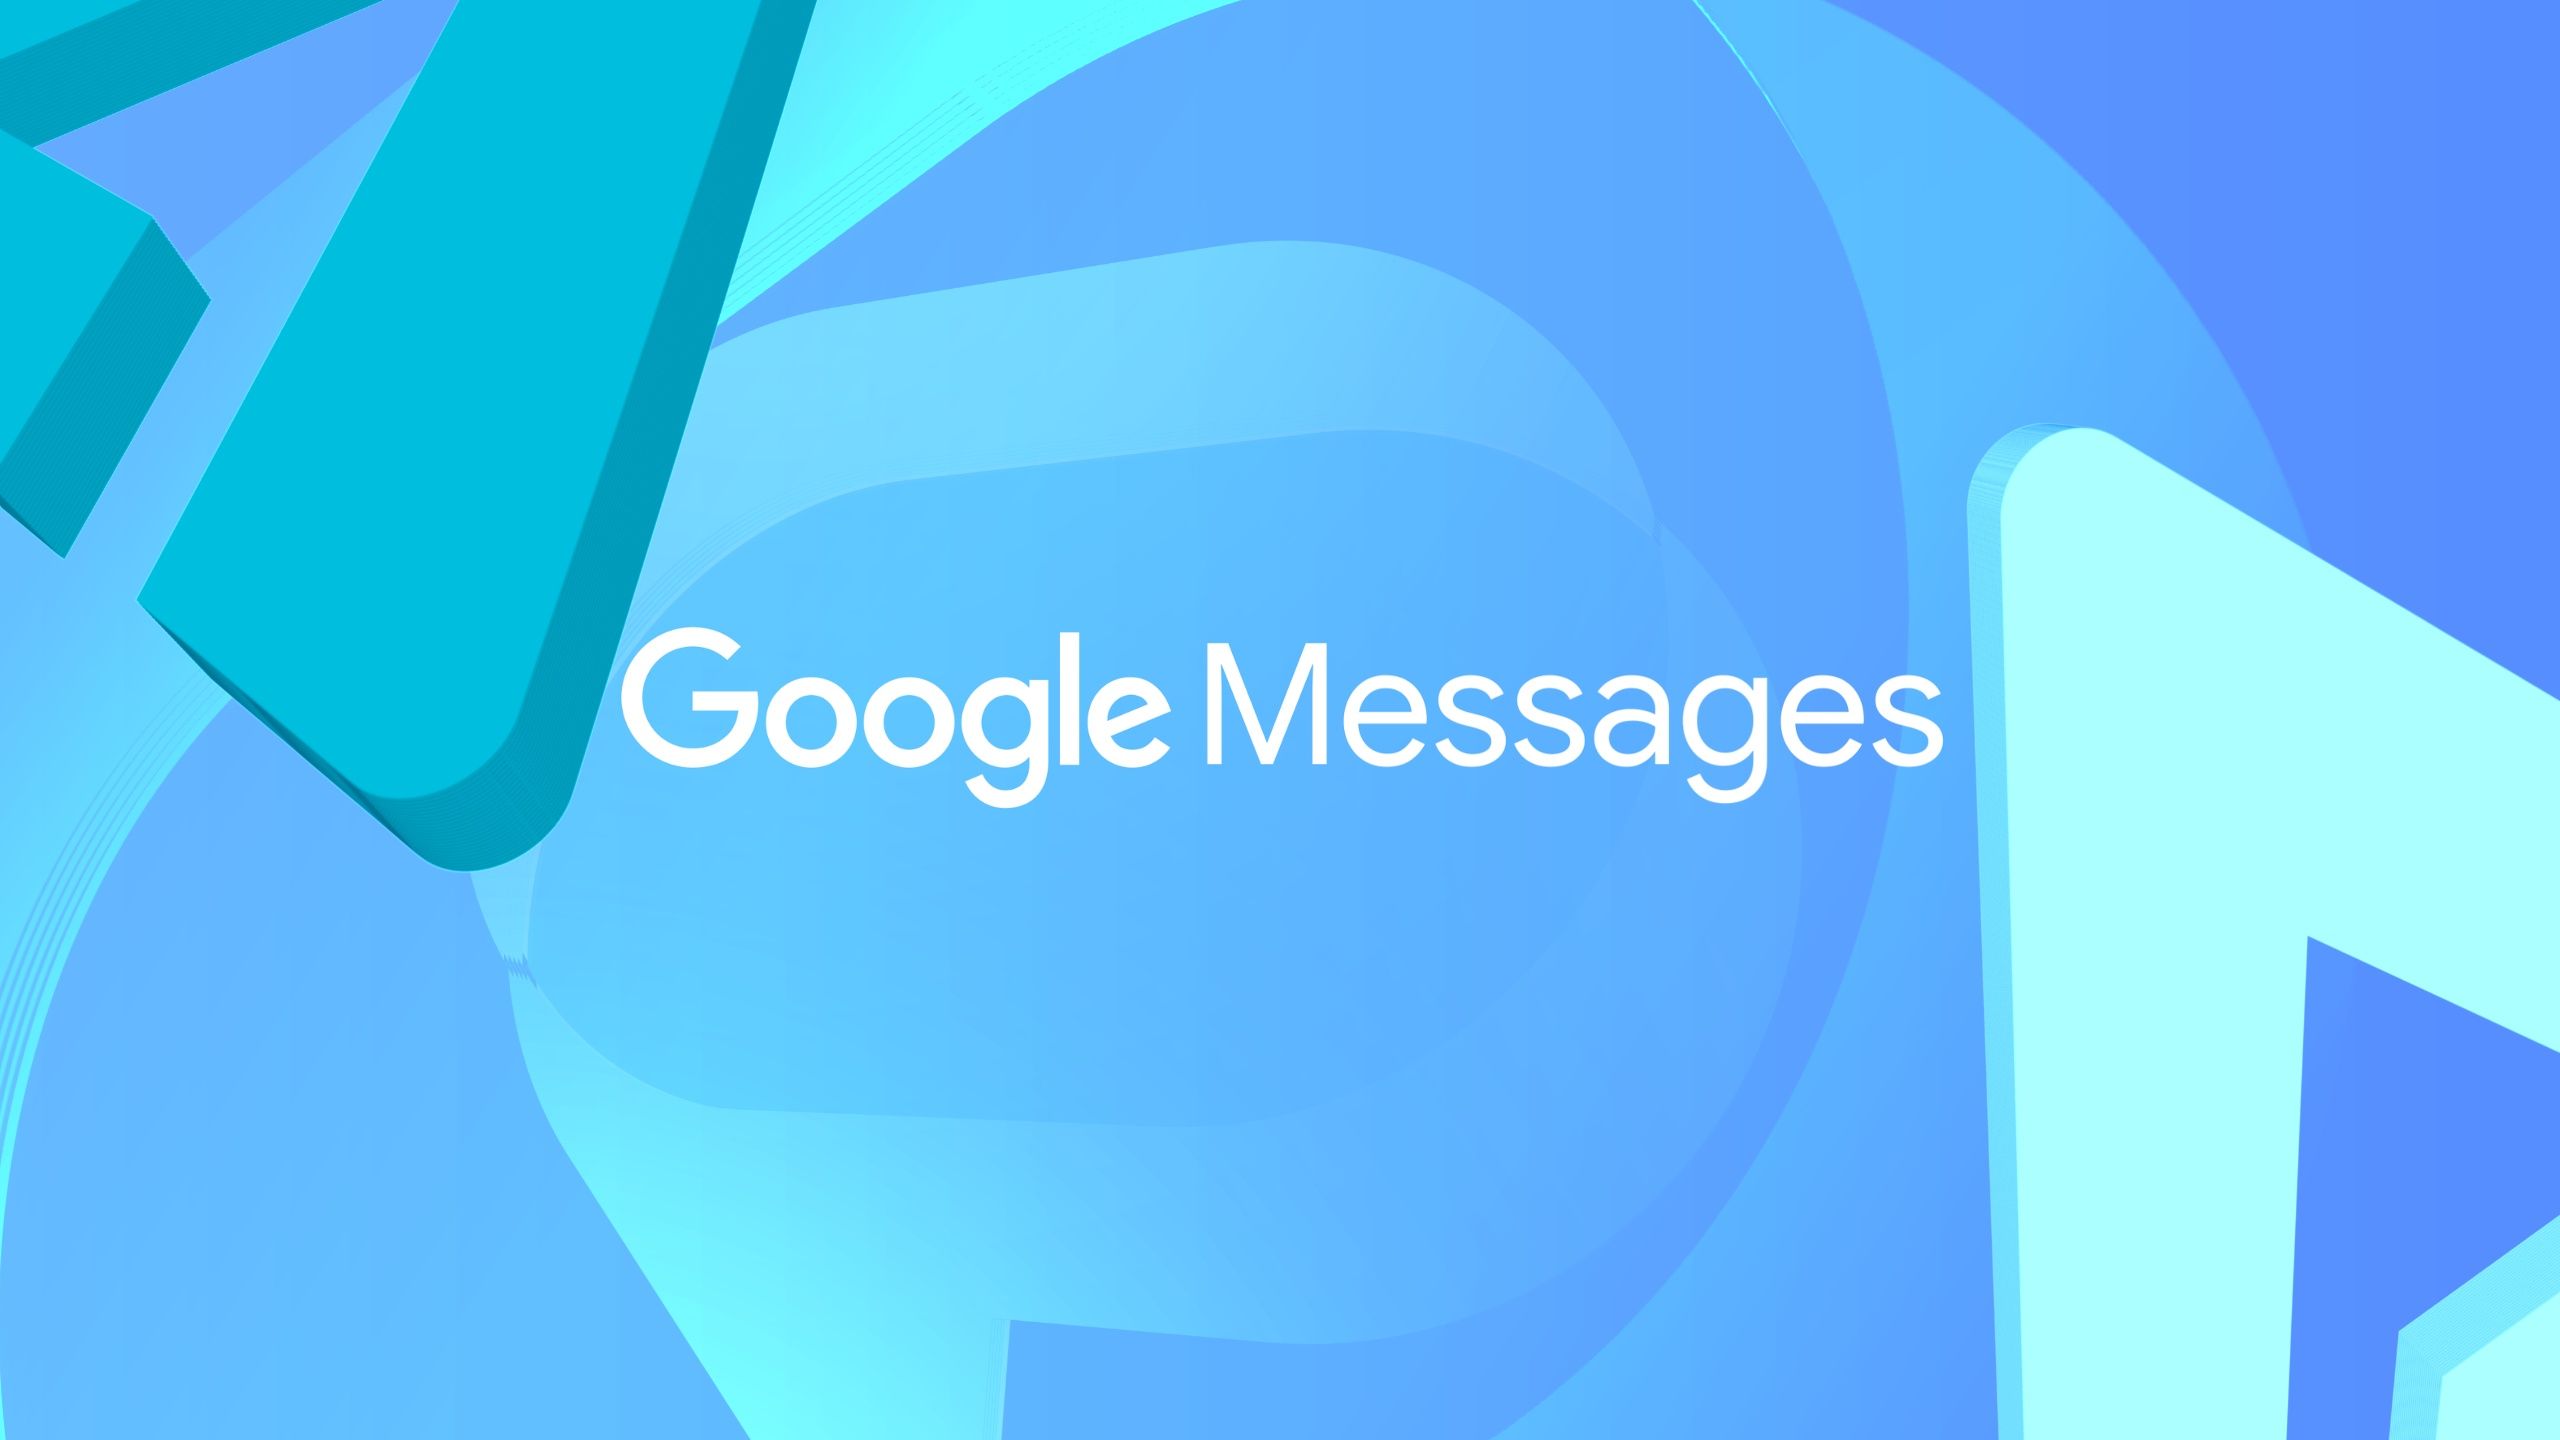 As palavras 'Google Messages' em um fundo azul e verde claro